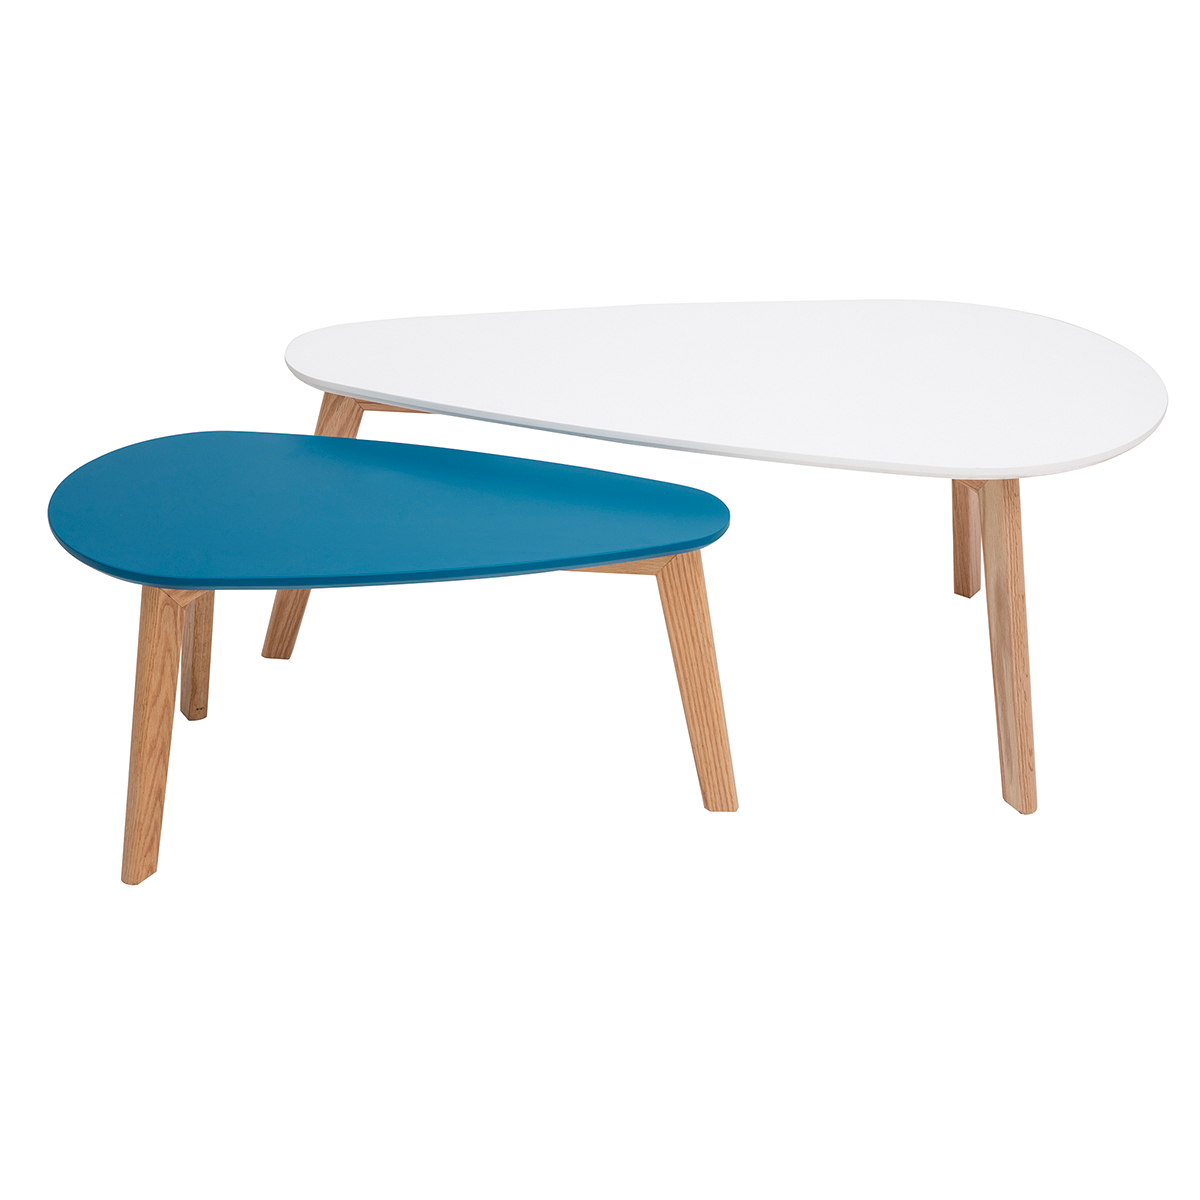 Tables basses scandinaves blanc, bleu canard et bois clair chêne (lot de 2) ARTIK vue1